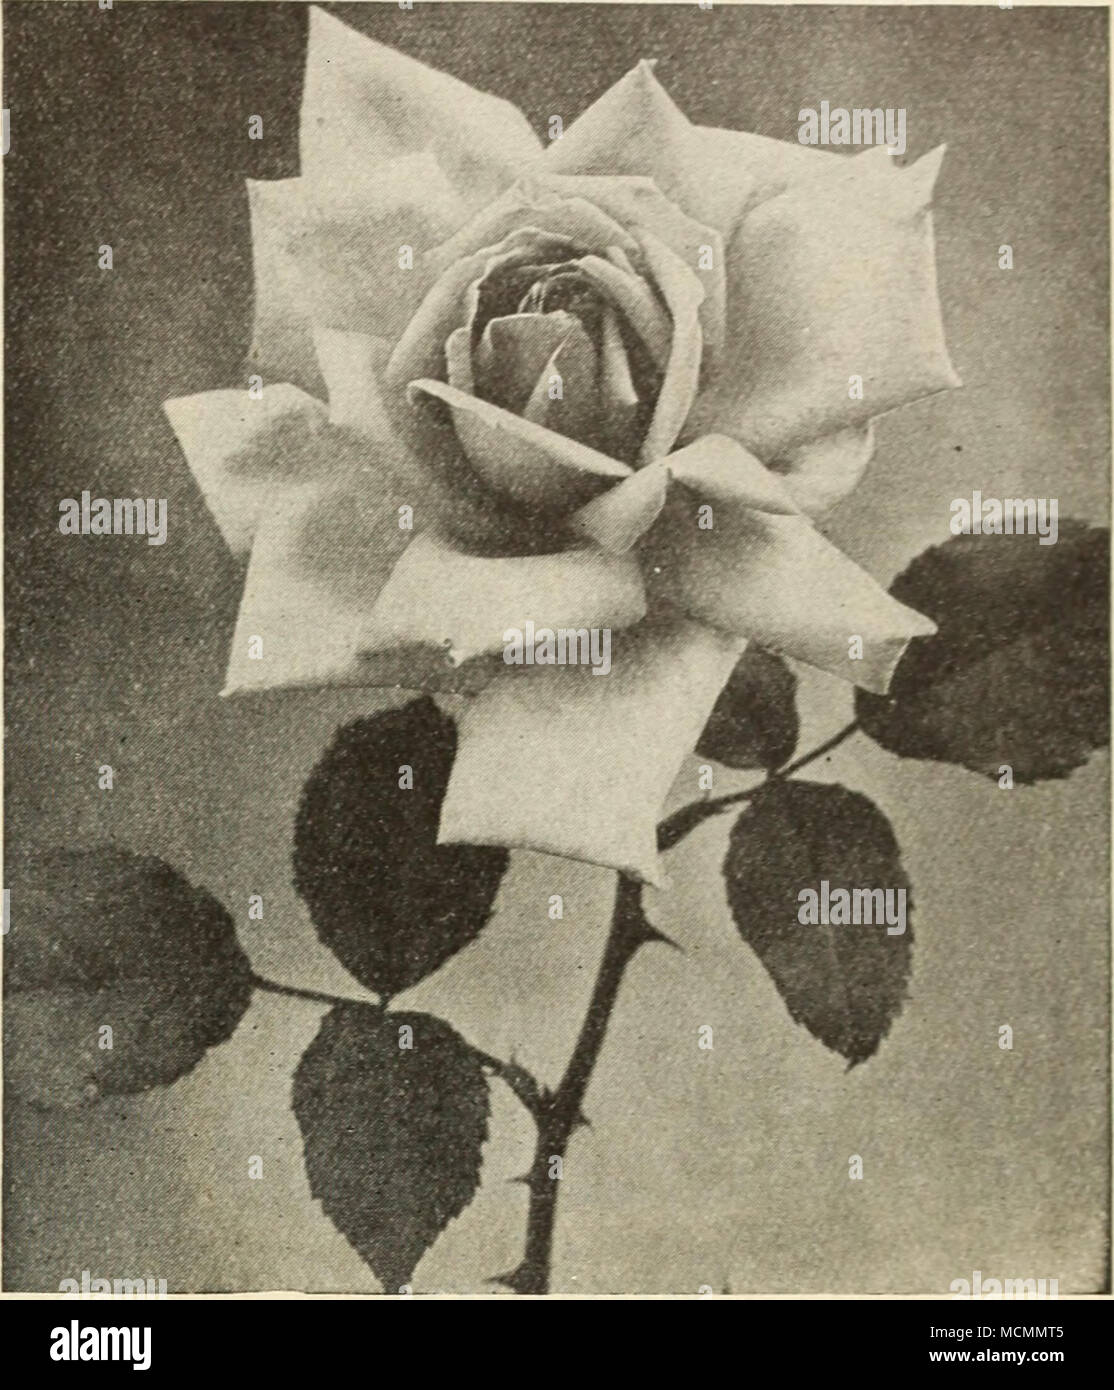 Mad. Abel Chatenay Mad. Jules Grolez Mad, Abel Chatenay Grand Neue  Perpetual-Blooming Rose Diese herrliche Rose ist einer der Besten seiner  Farbe - rosige Carmine, mit dunkler Schatten. Es ist bemerkenswert